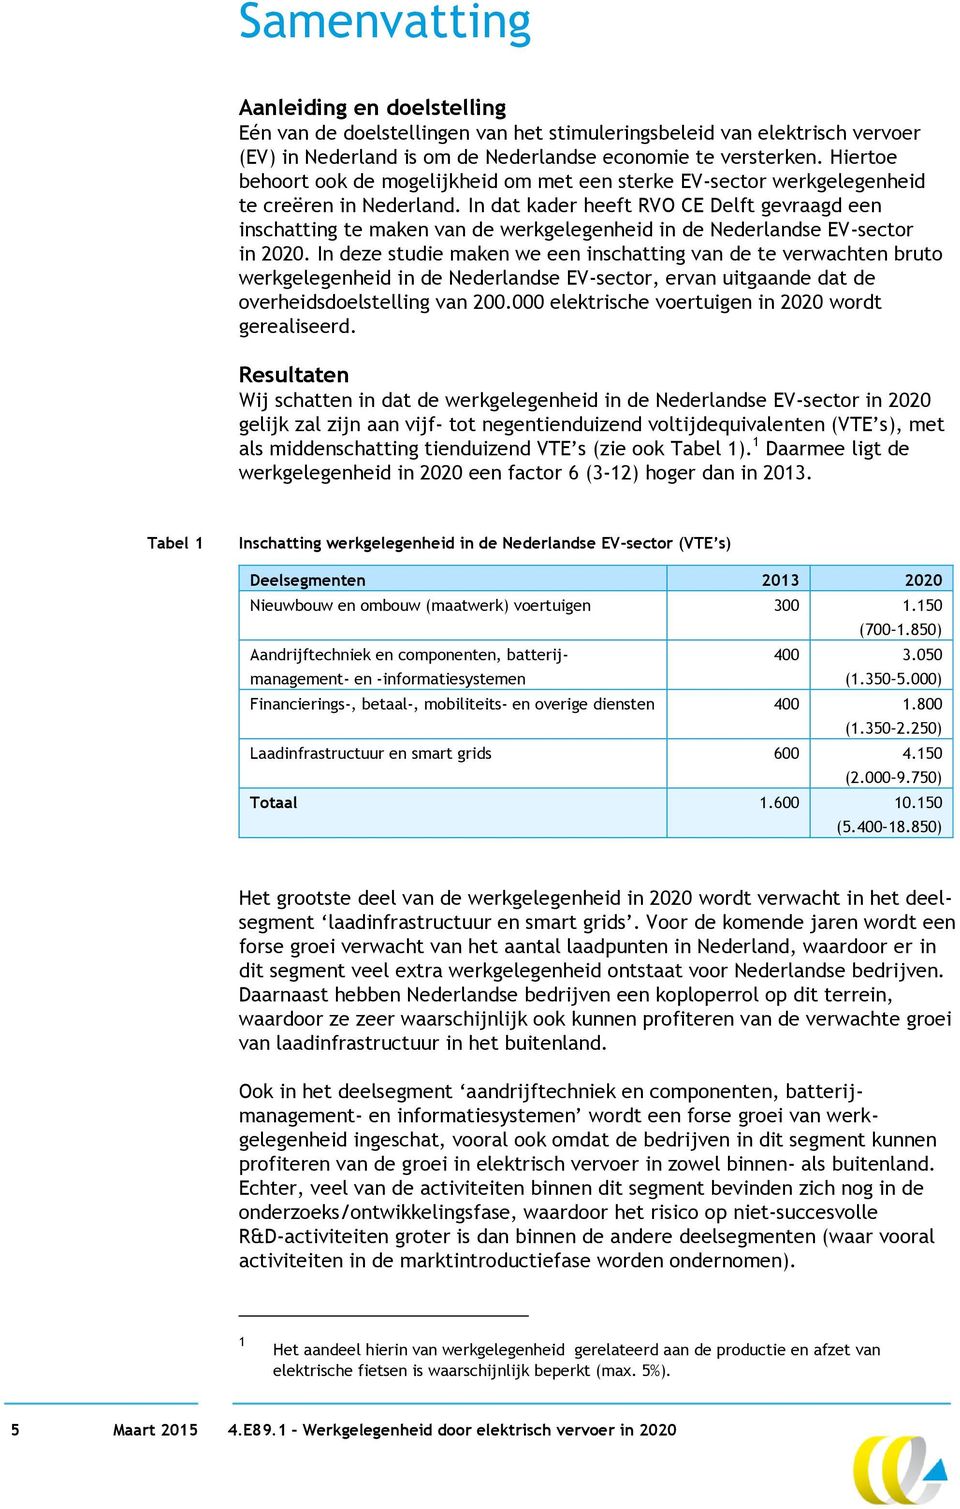 In dat kader heeft RVO CE Delft gevraagd een inschatting te maken van de werkgelegenheid in de Nederlandse EV-sector in 2020.